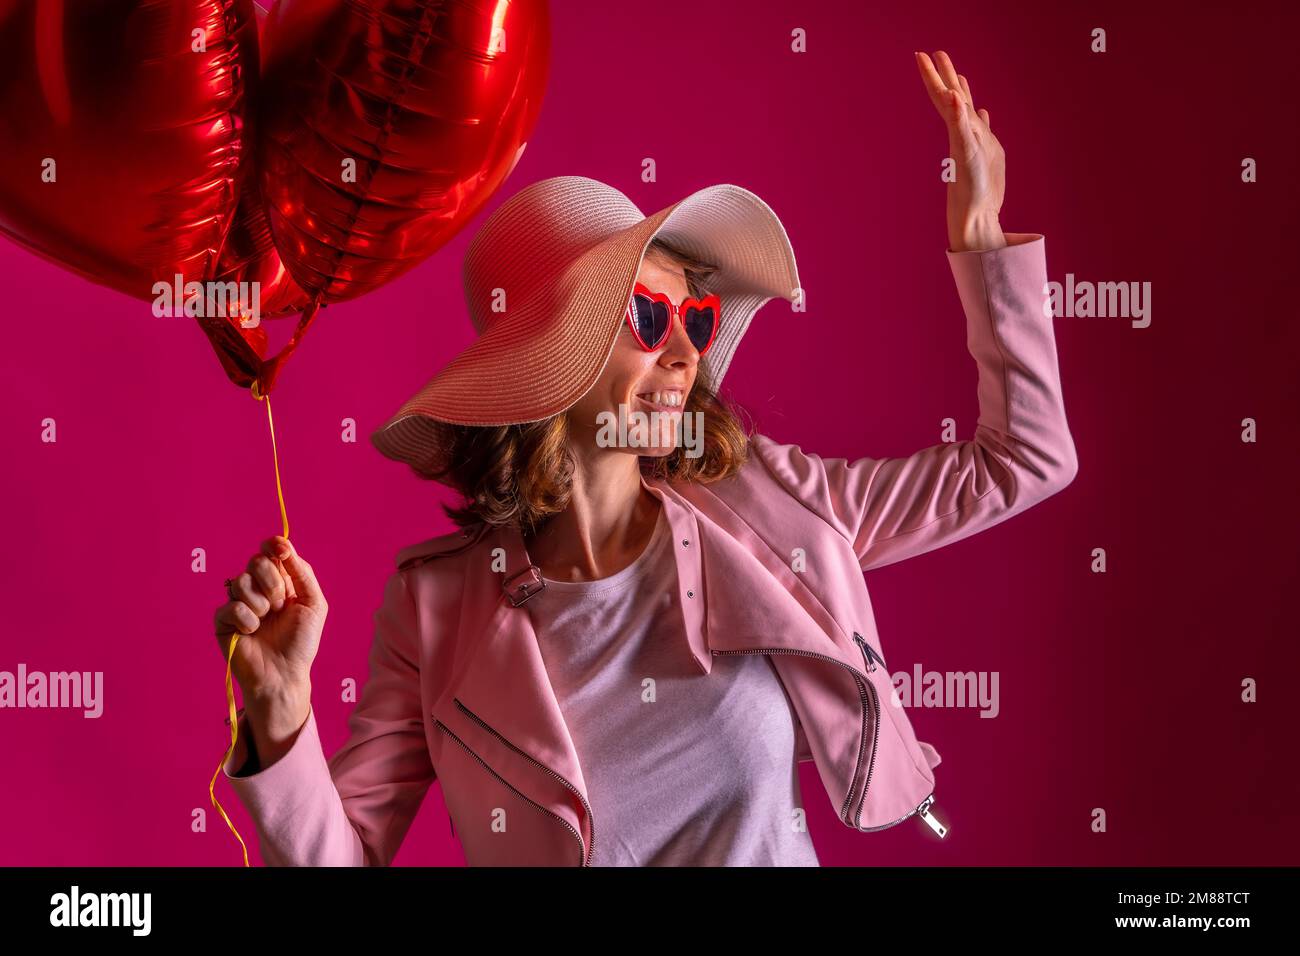 Une femme caucasienne avec un chapeau blanc dans une boîte de nuit avec quelques ballons de coeur, fond rose Banque D'Images